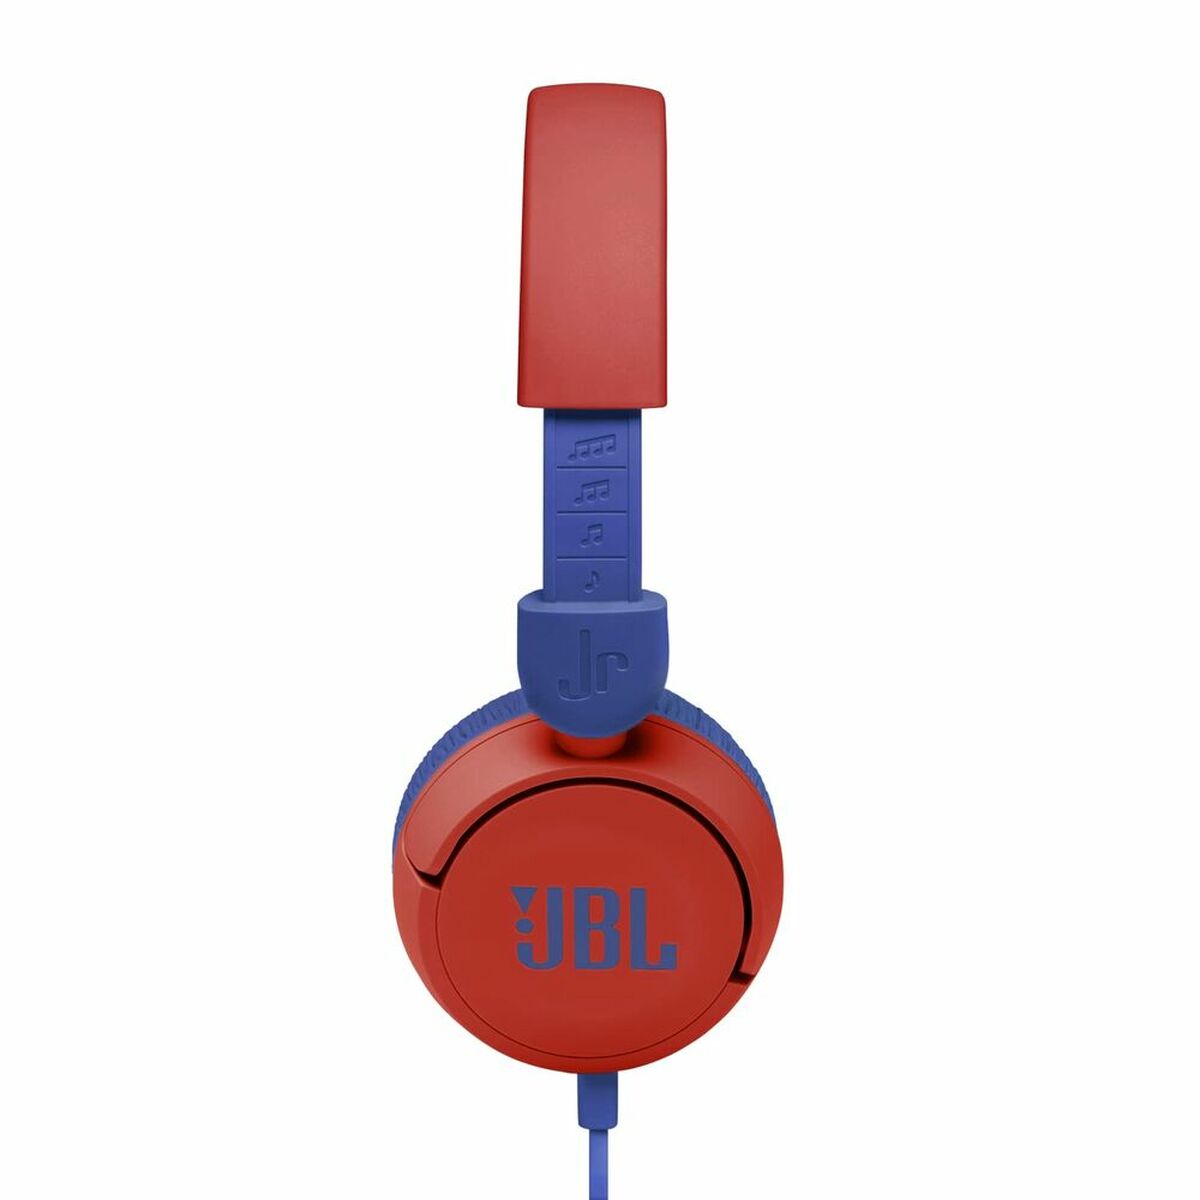 Kaufe Diadem-Kopfhörer JBL JR310 Rot bei AWK Flagship um € 52.00